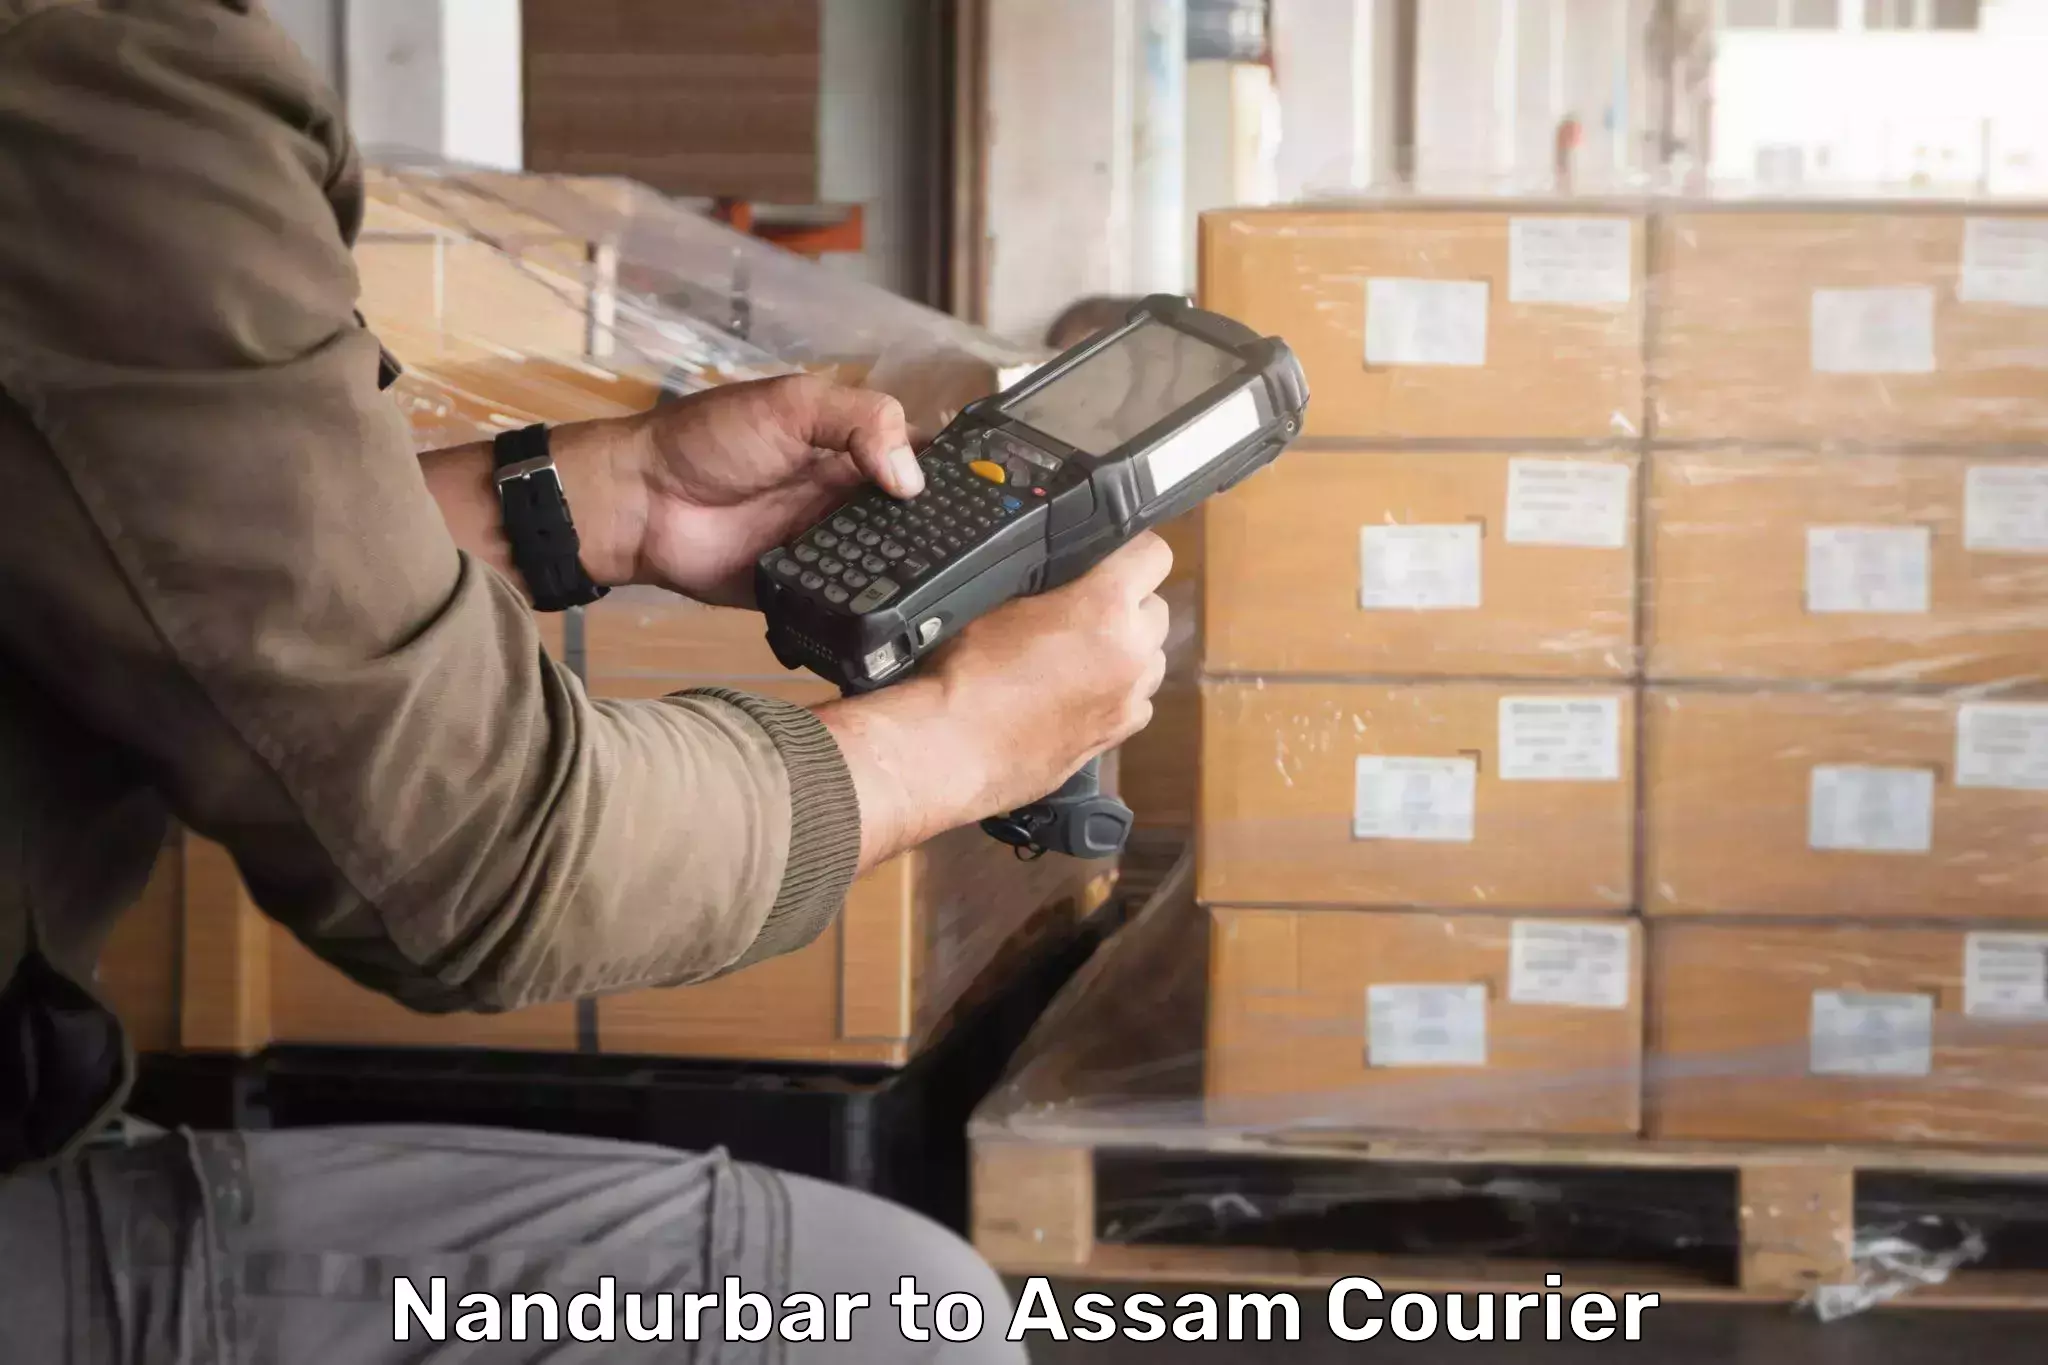 Quick courier services Nandurbar to IIIT Guwahati